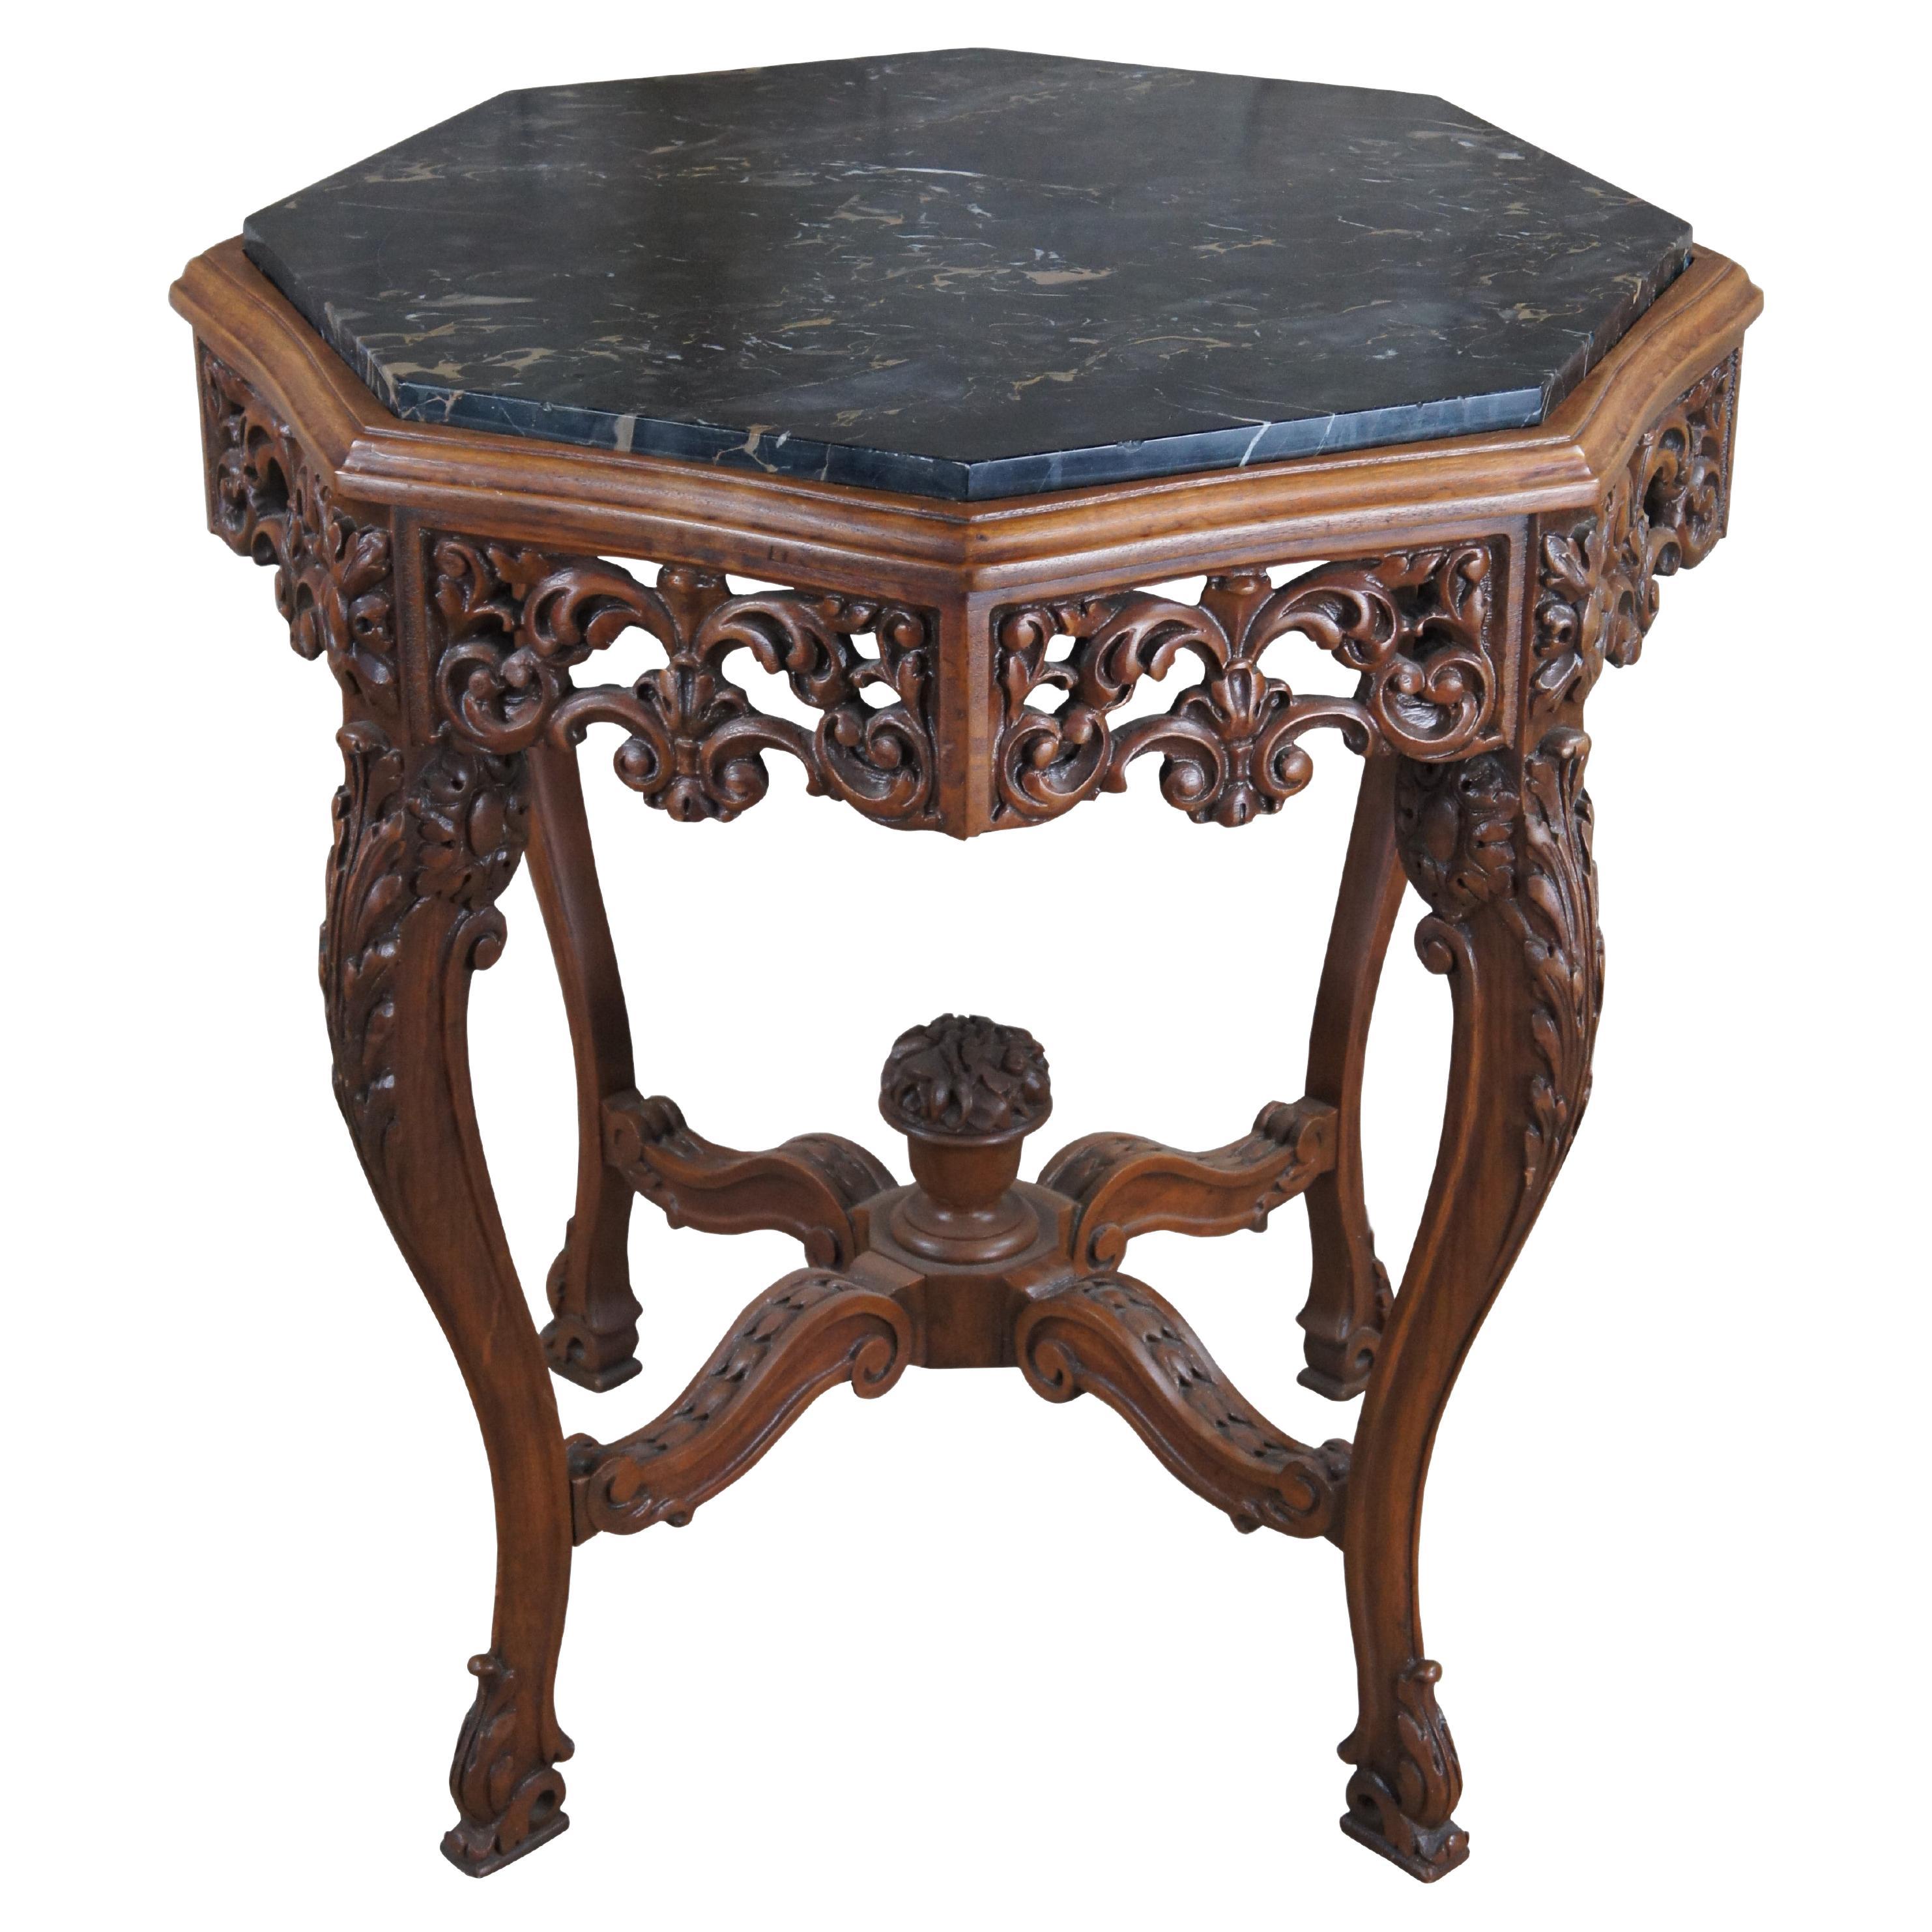 Ancienne table d'appoint octogonale en noyer sculpté de la Renaissance italienne